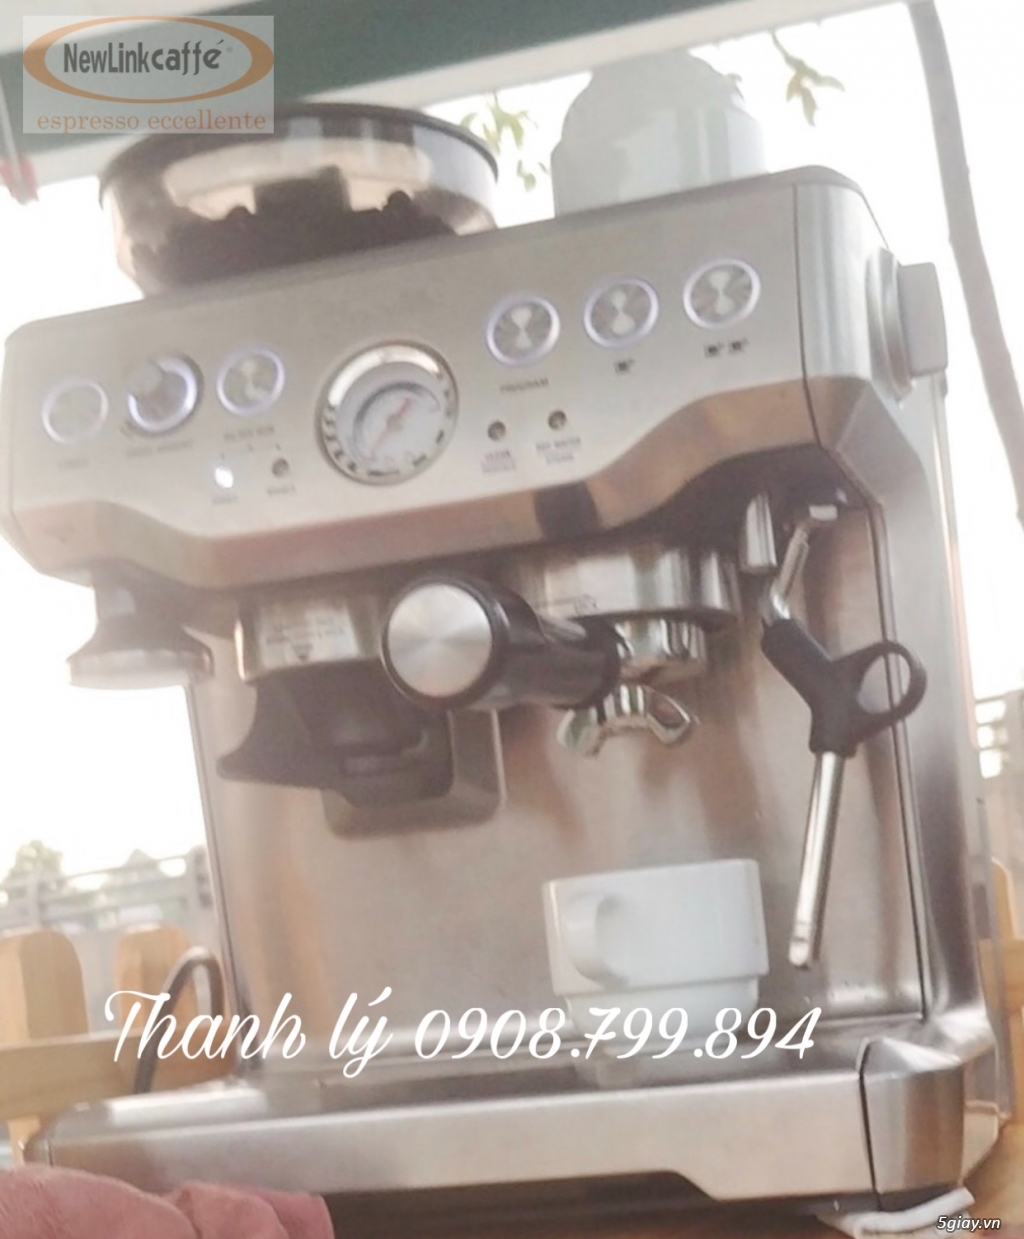 Thanh lý máy pha cà phê Nouvasimoneli giá rẻ nhất tại Hcm